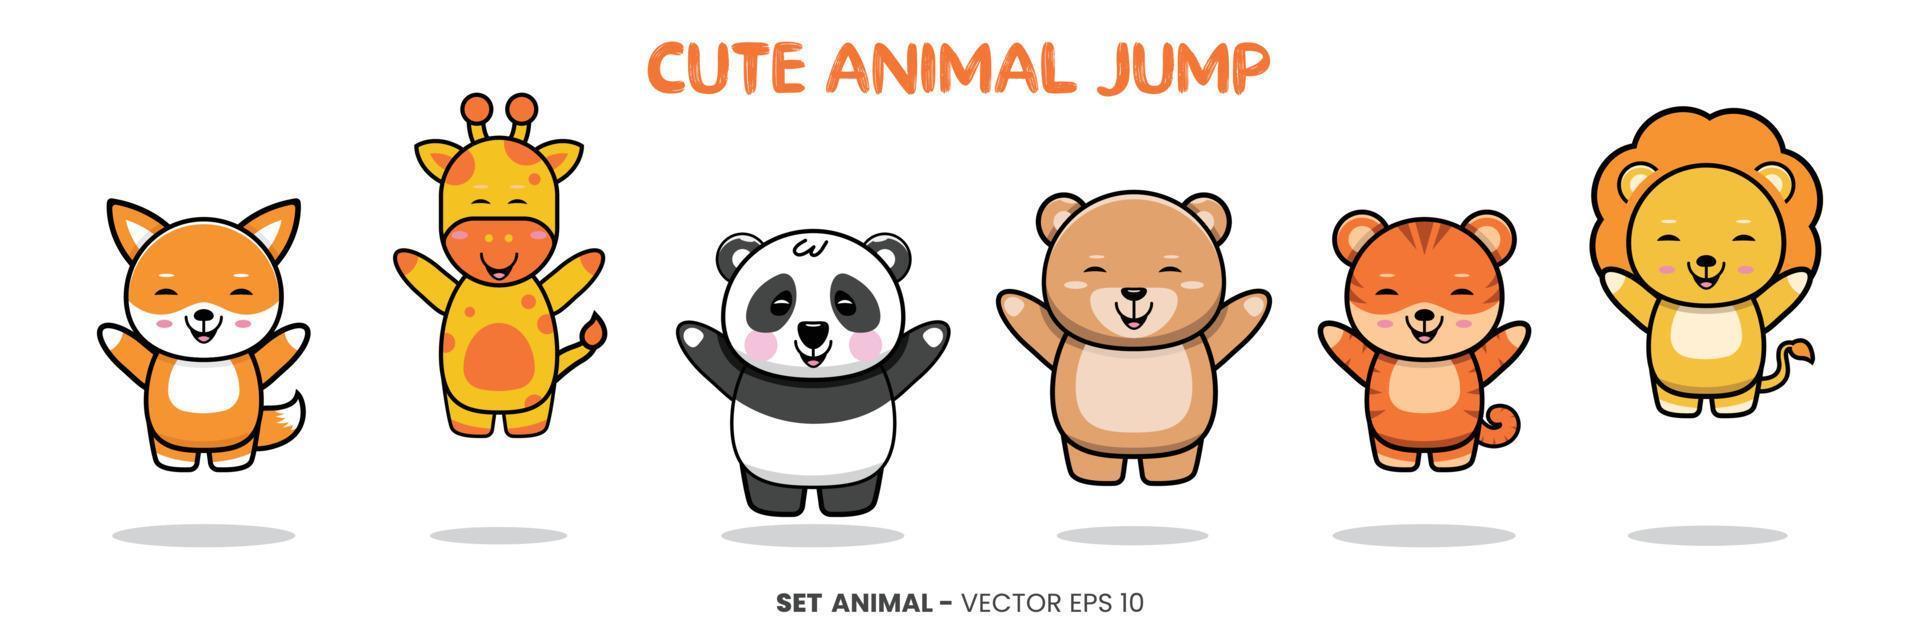 kindermotivierte illustration mit niedlichen tierfiguren - giraffe, panda, bär, tiger, löwe und fuchstier, das mit einem glücklichen ausdruck sitzt und lächelt. vektor